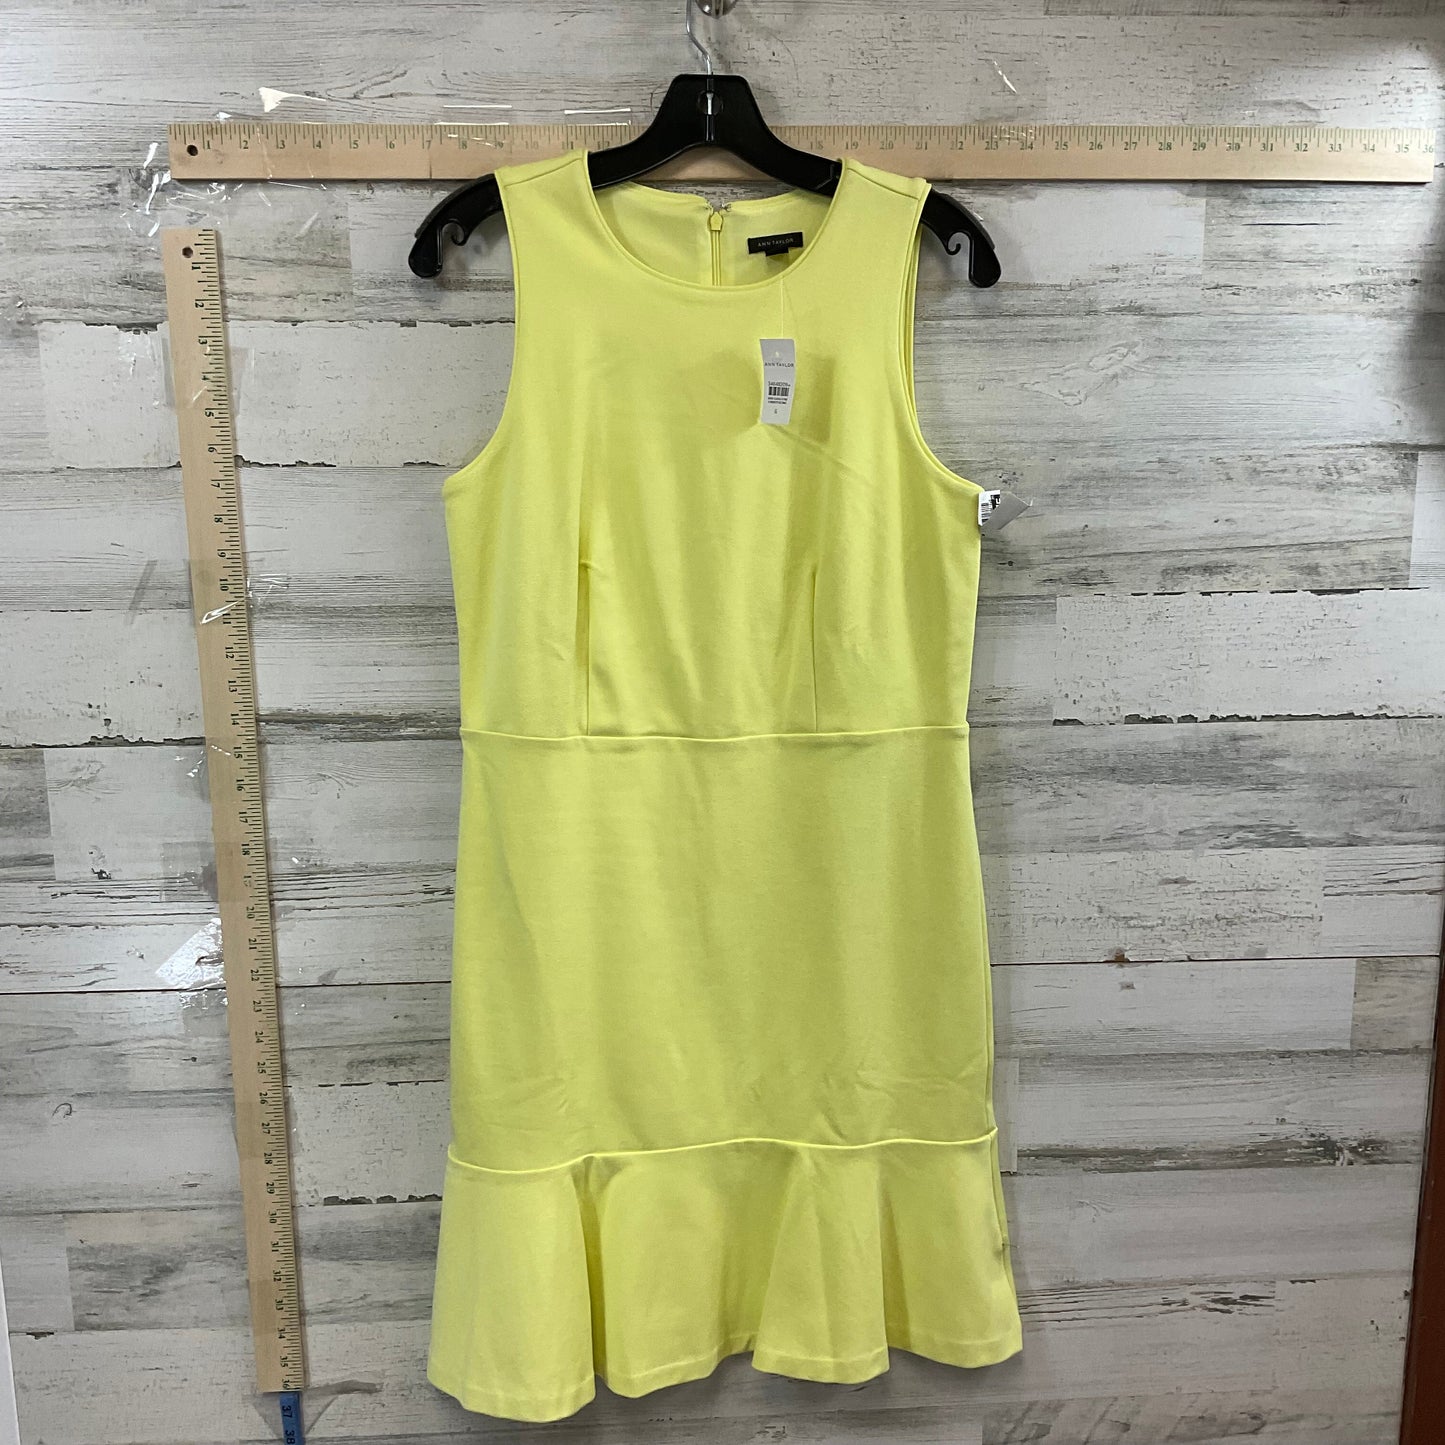 Yellow Dress Work Ann Taylor, Size S